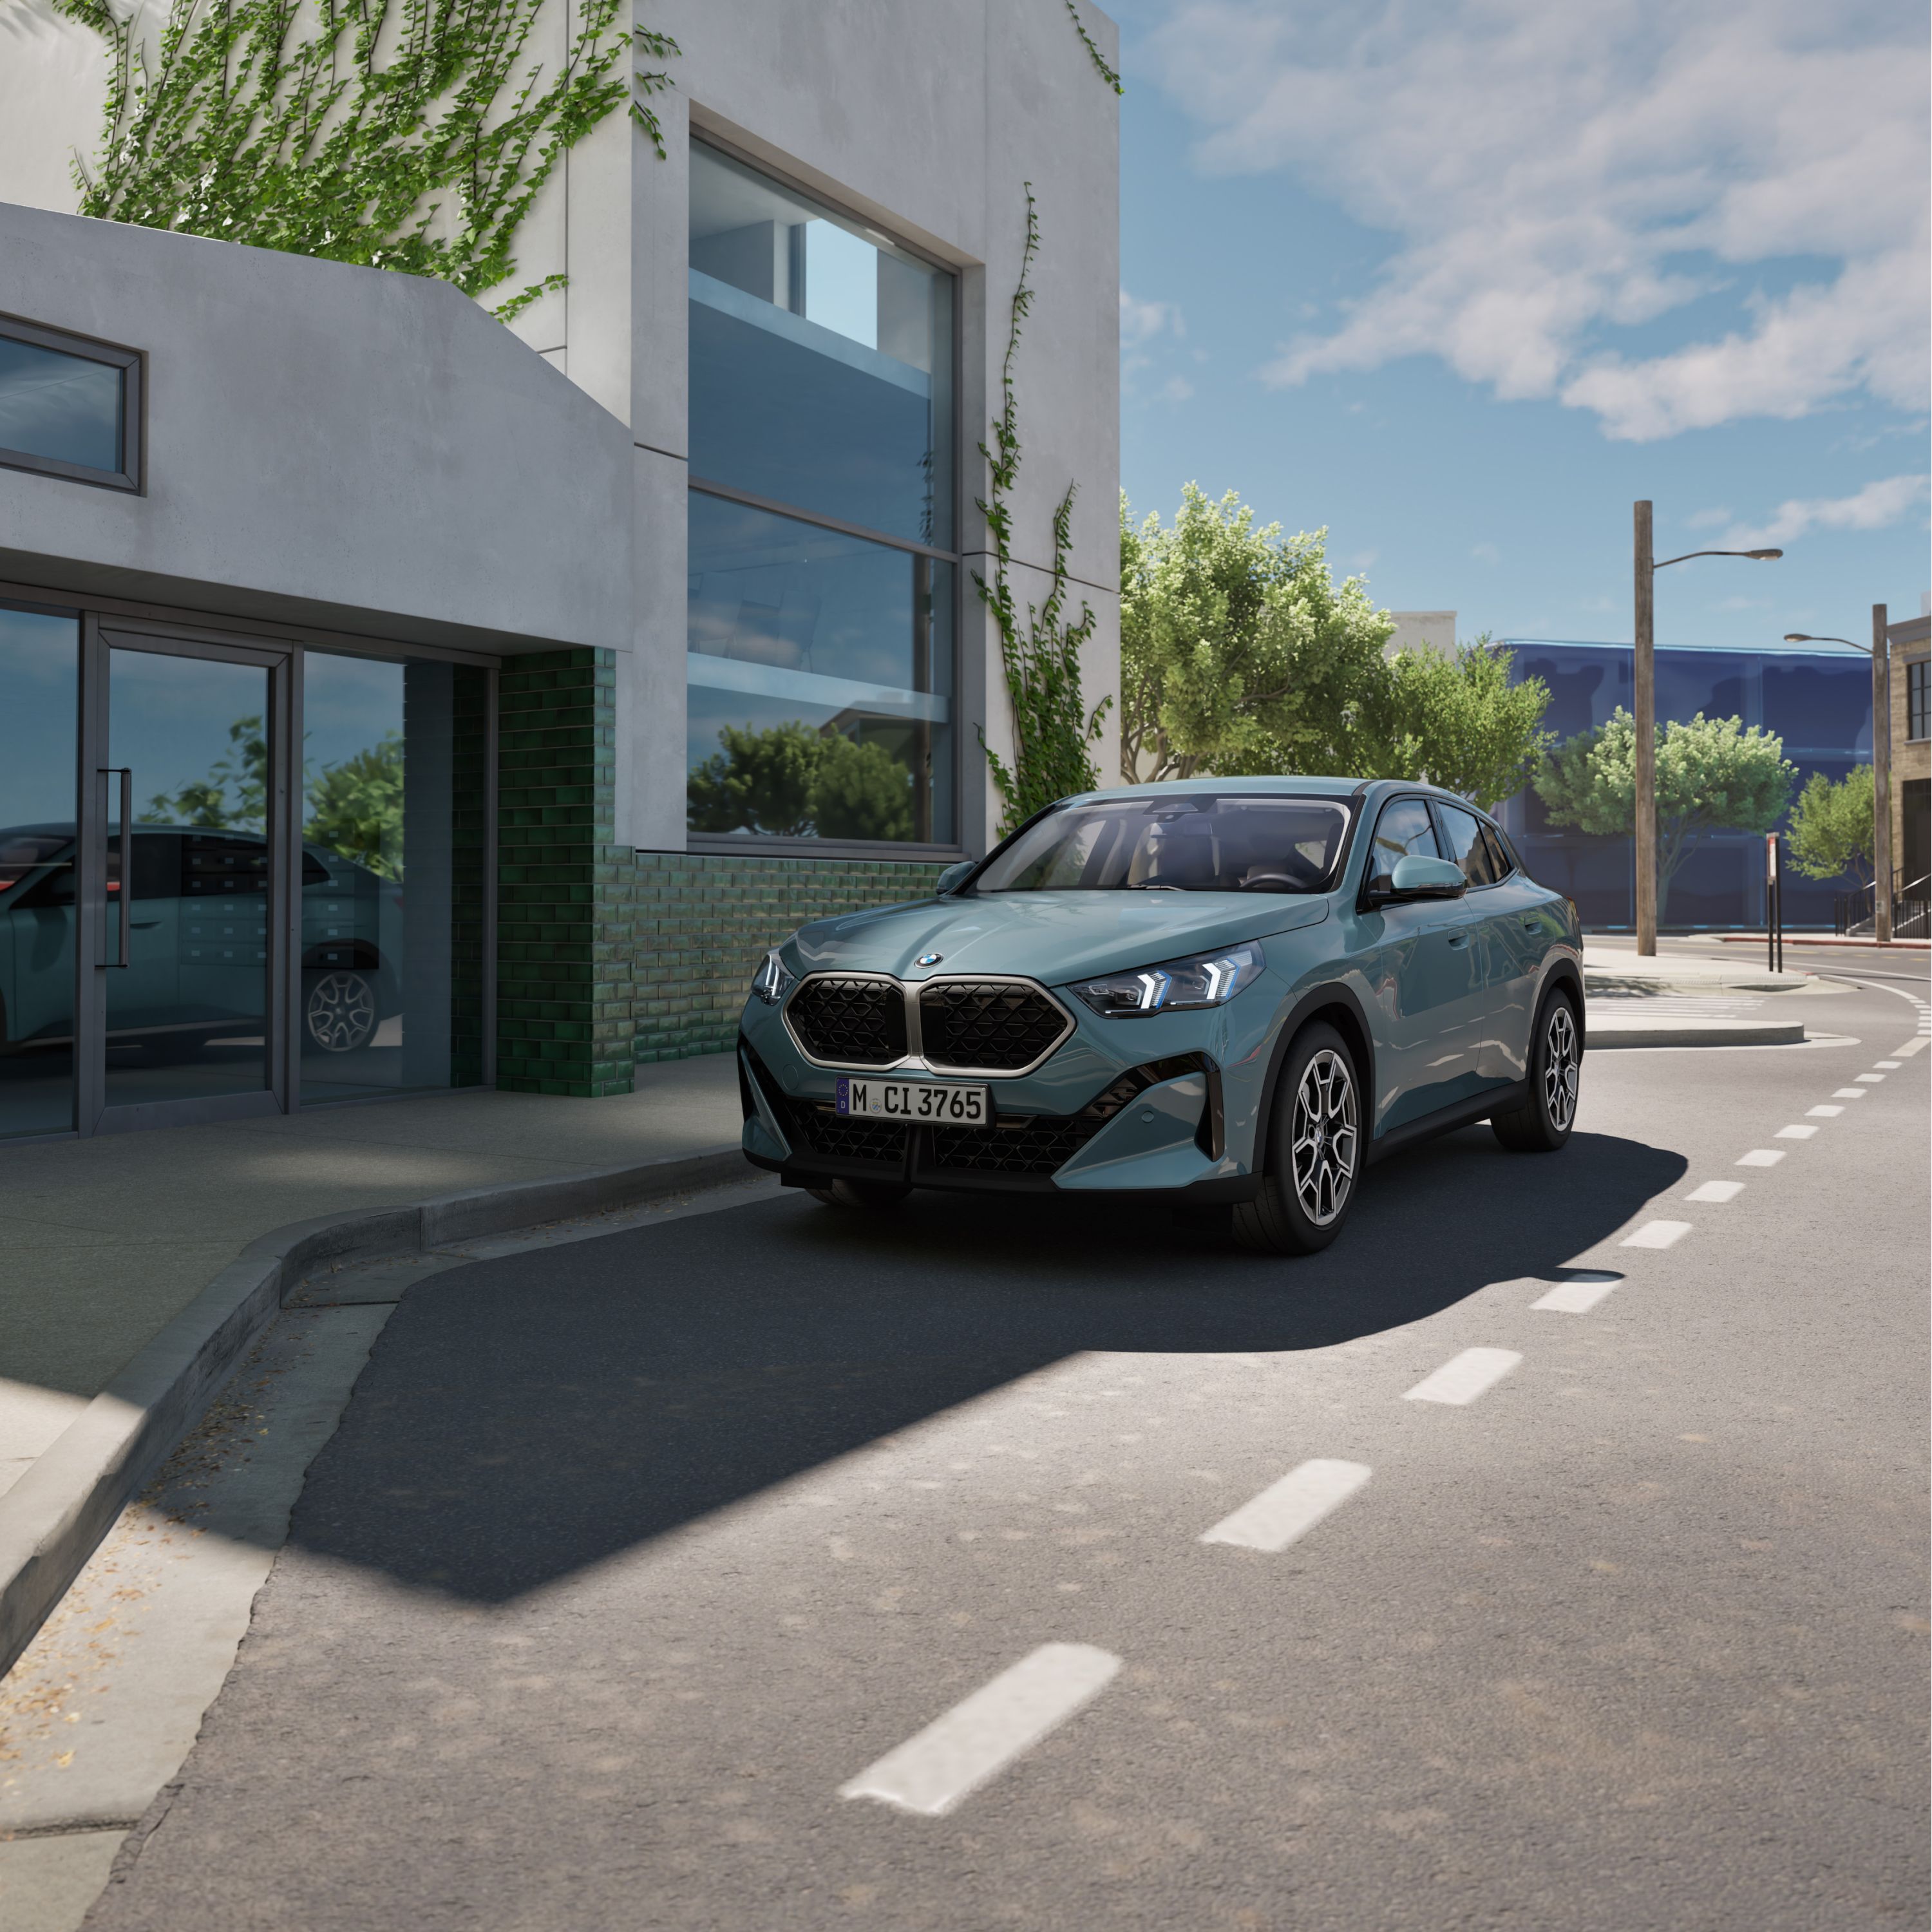 BMW X2 financieringsaanbiedingen en financieringsopties